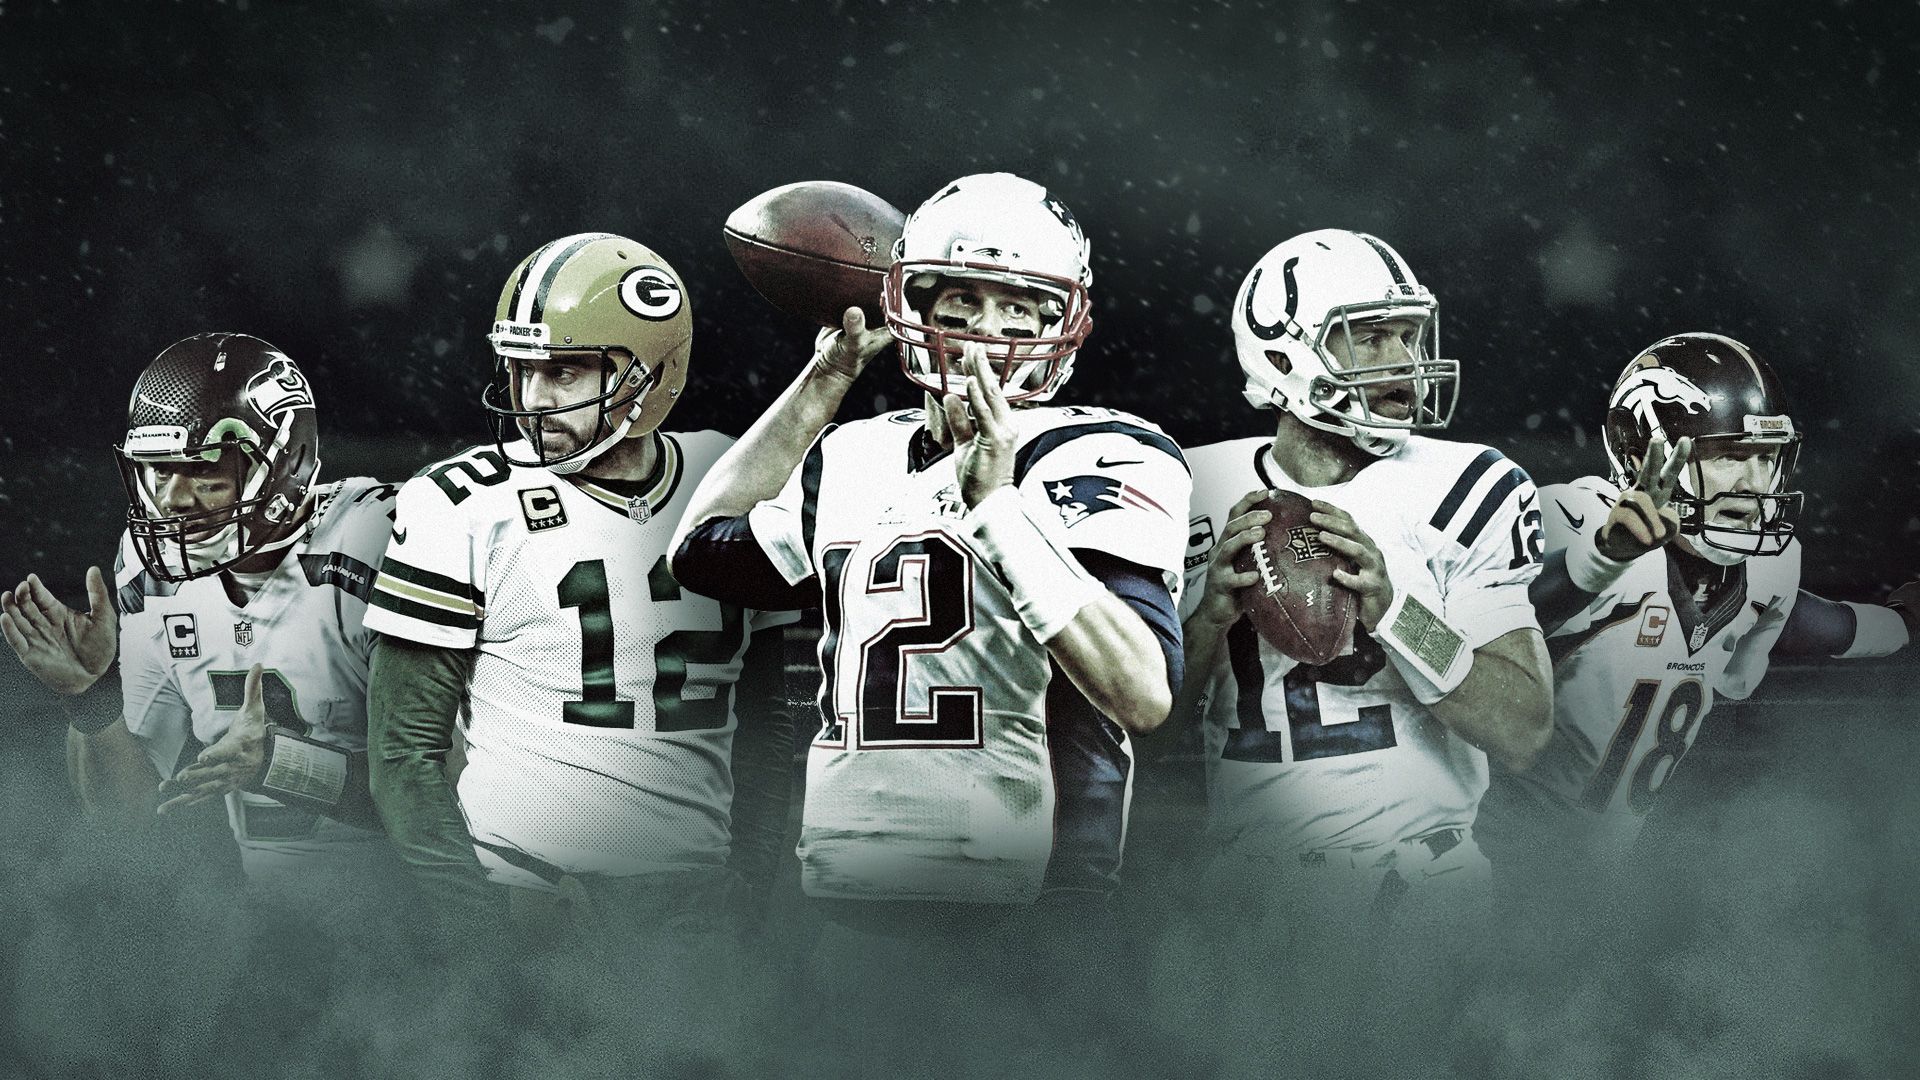 NFL quarterbacks for 2015: No. 2 finally gets his due